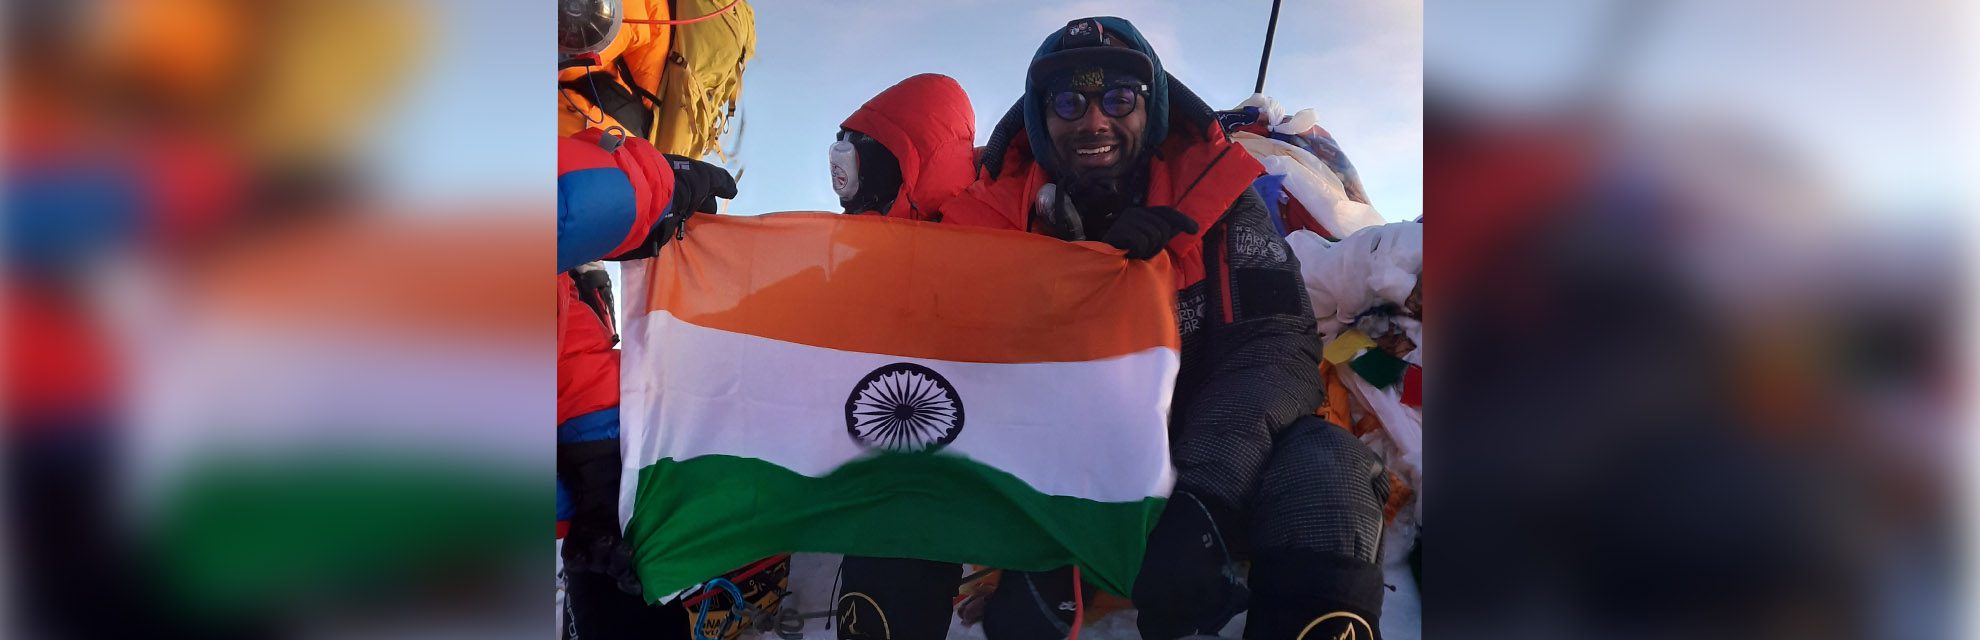 印度出生的登山者 Satish Gogineni 在 20 小时内登顶珠穆朗玛峰和洛子峰创下新纪录